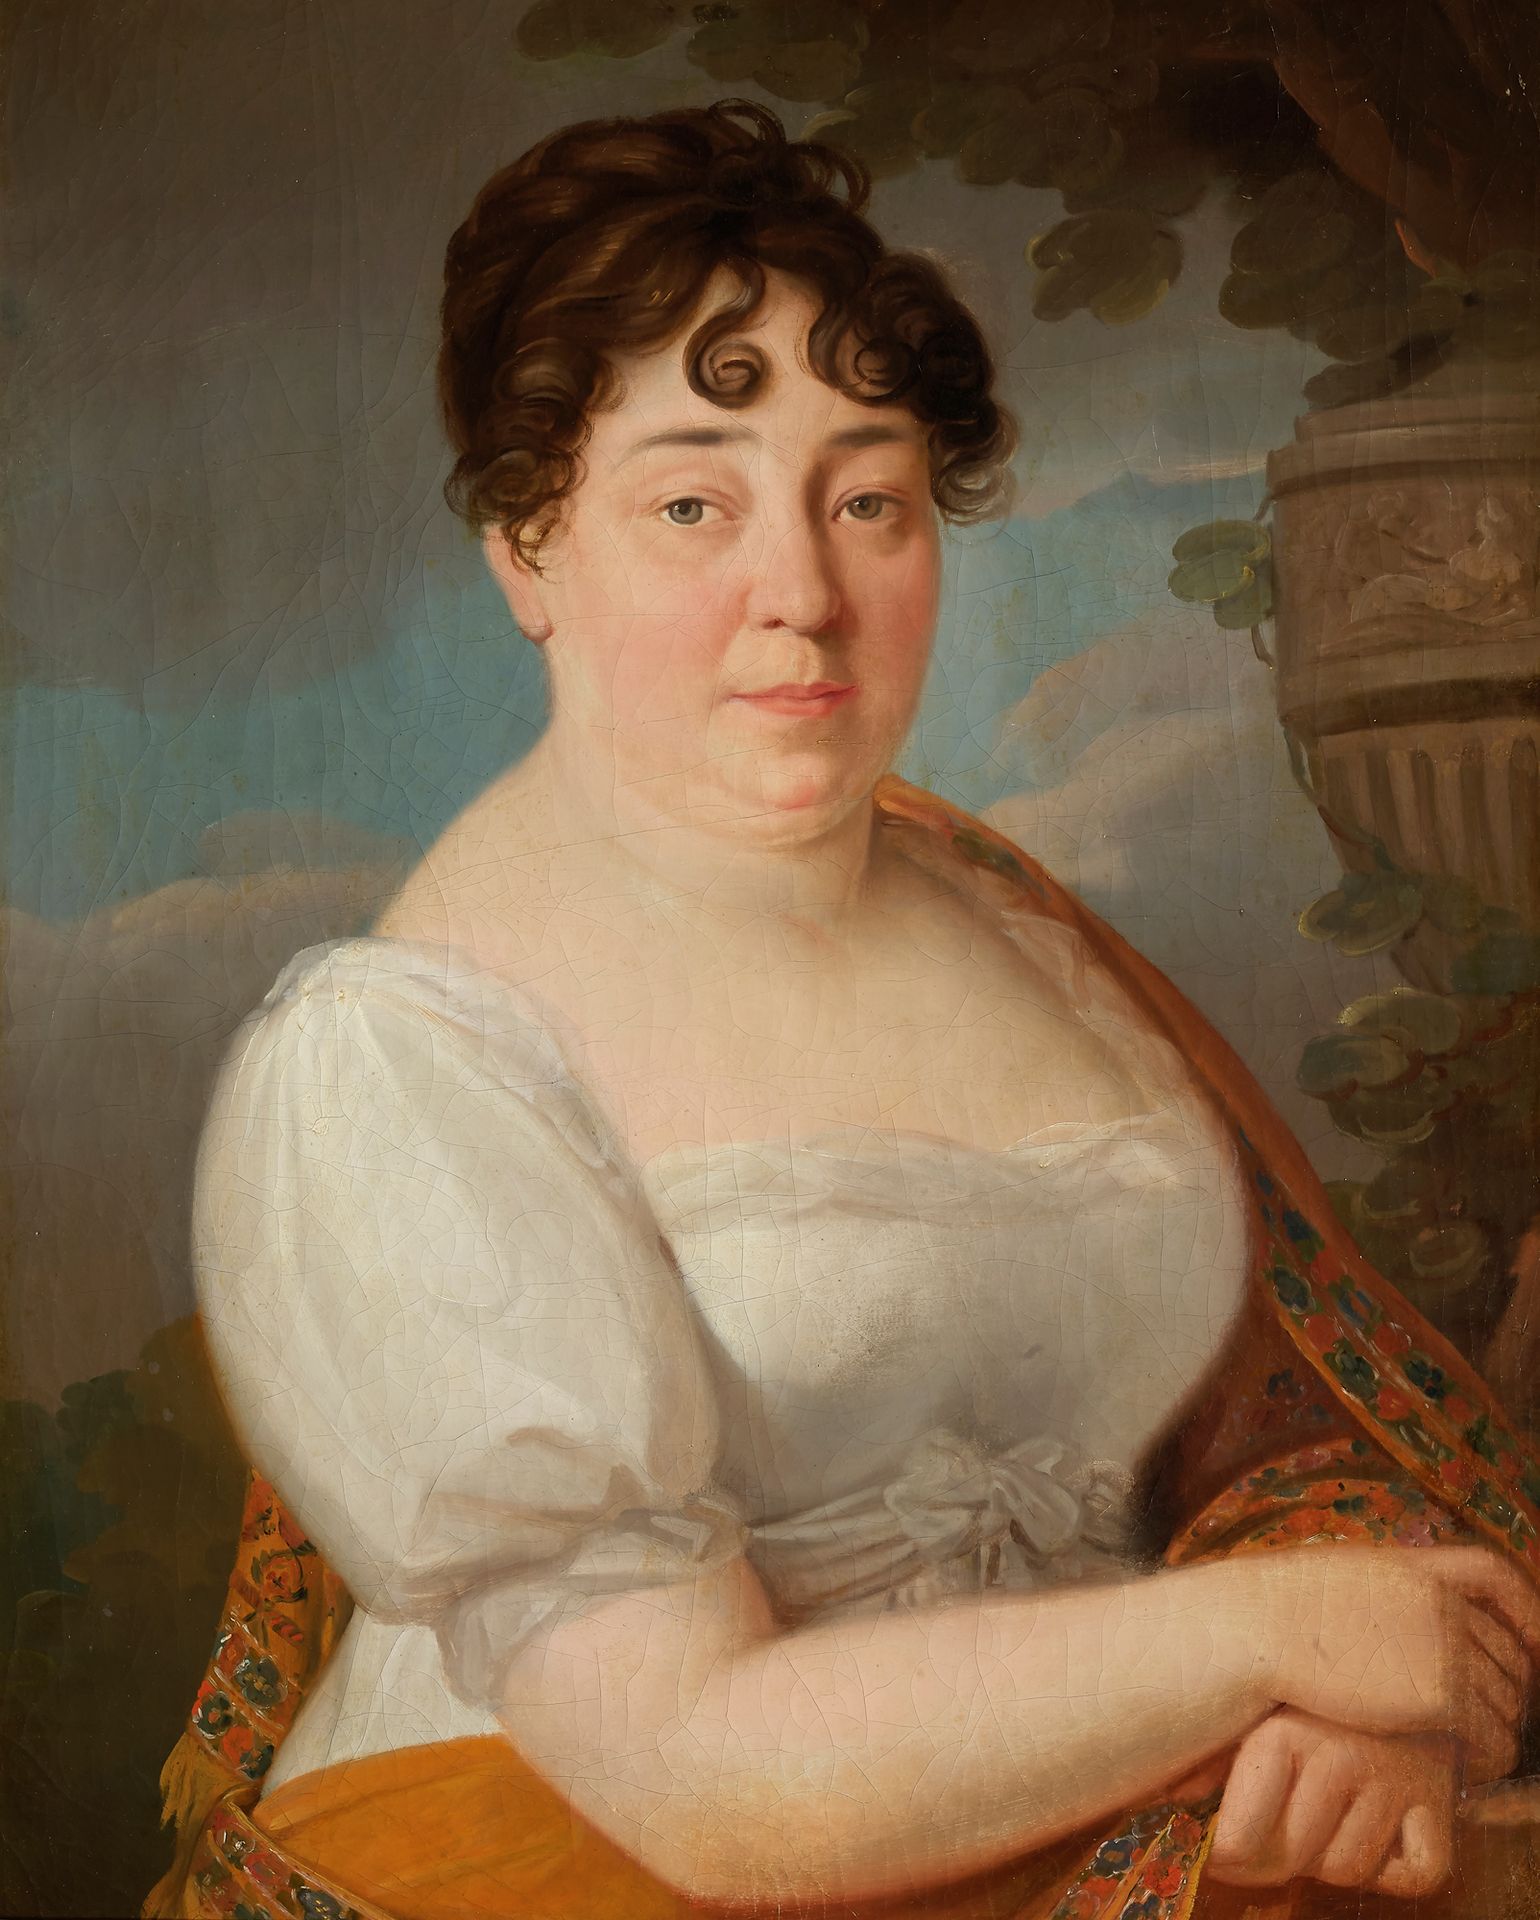 ÉCOLE FRANÇAISE, vers 1820 
穿白裙子的女人的肖像
帆布
73 x 57 cm